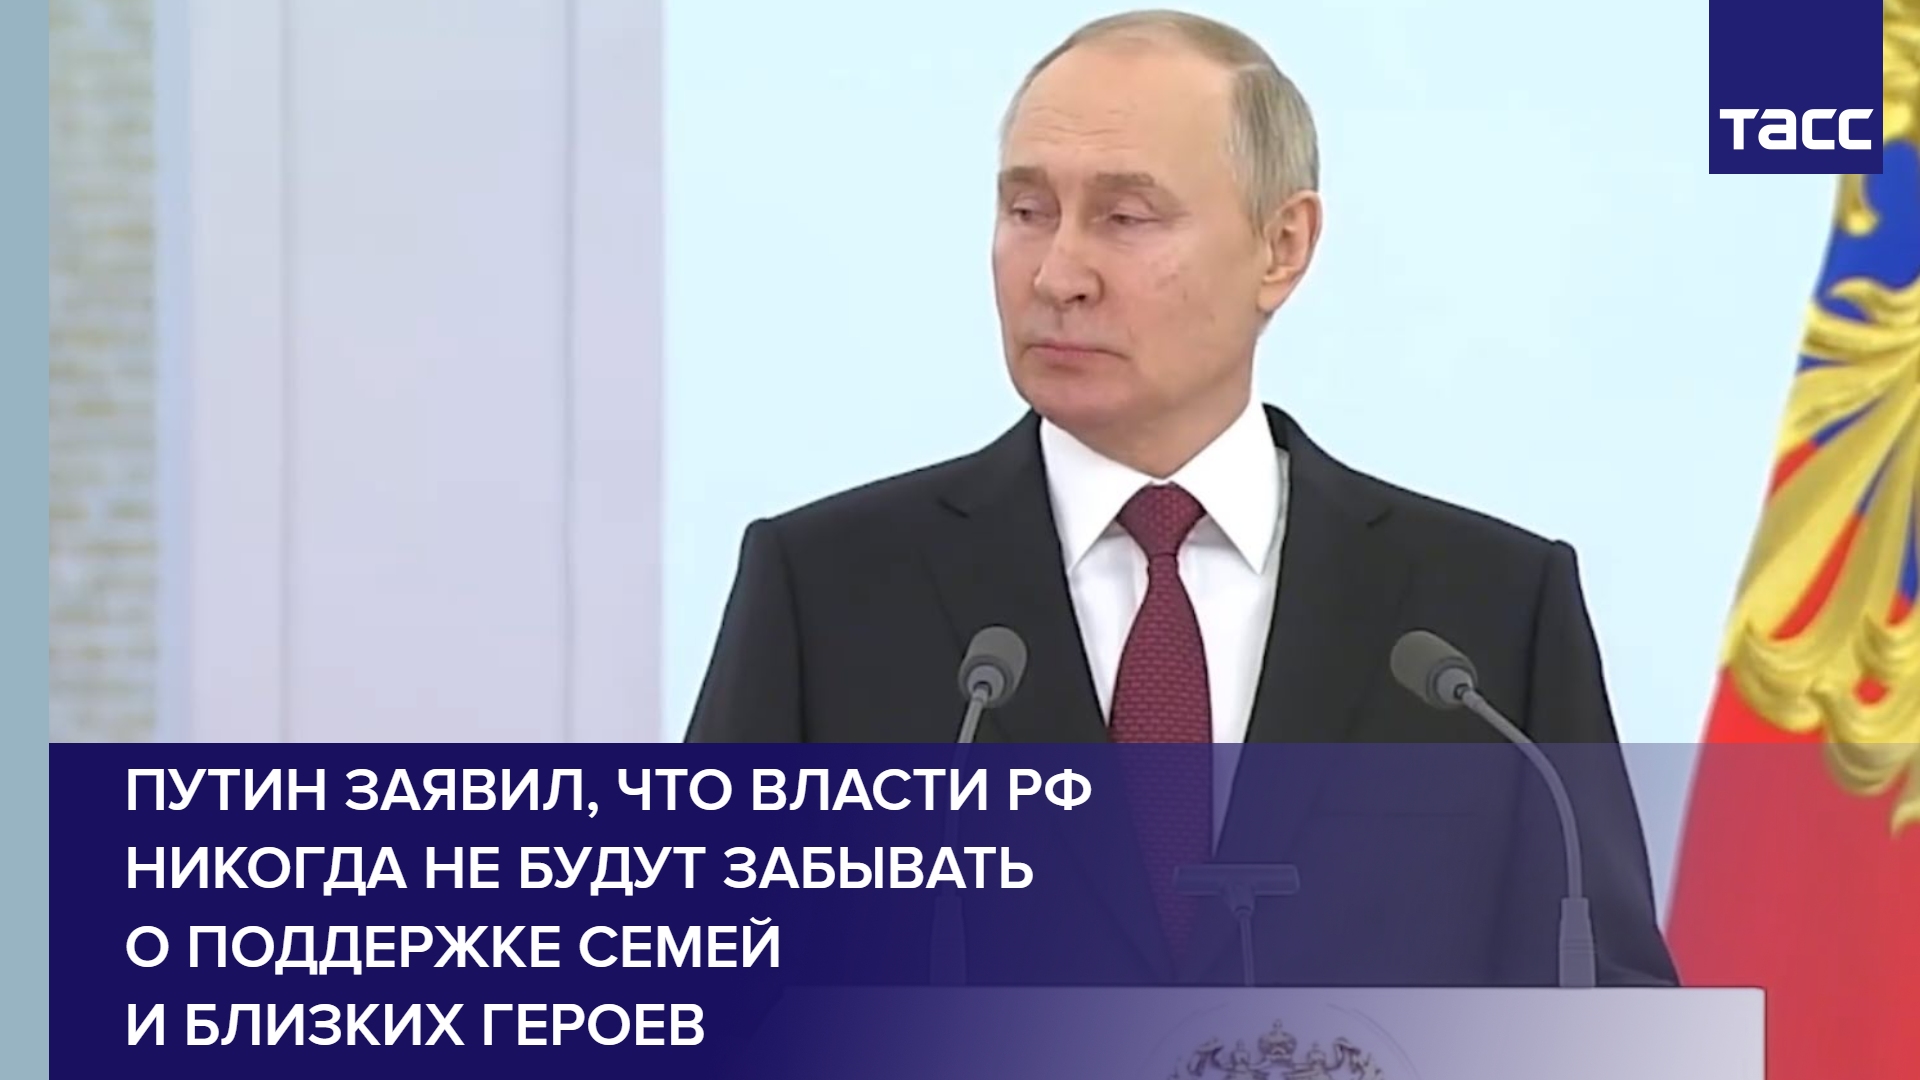 Путин заявил, что власти РФ никогда не будут забывать о поддержке семей и близких героев